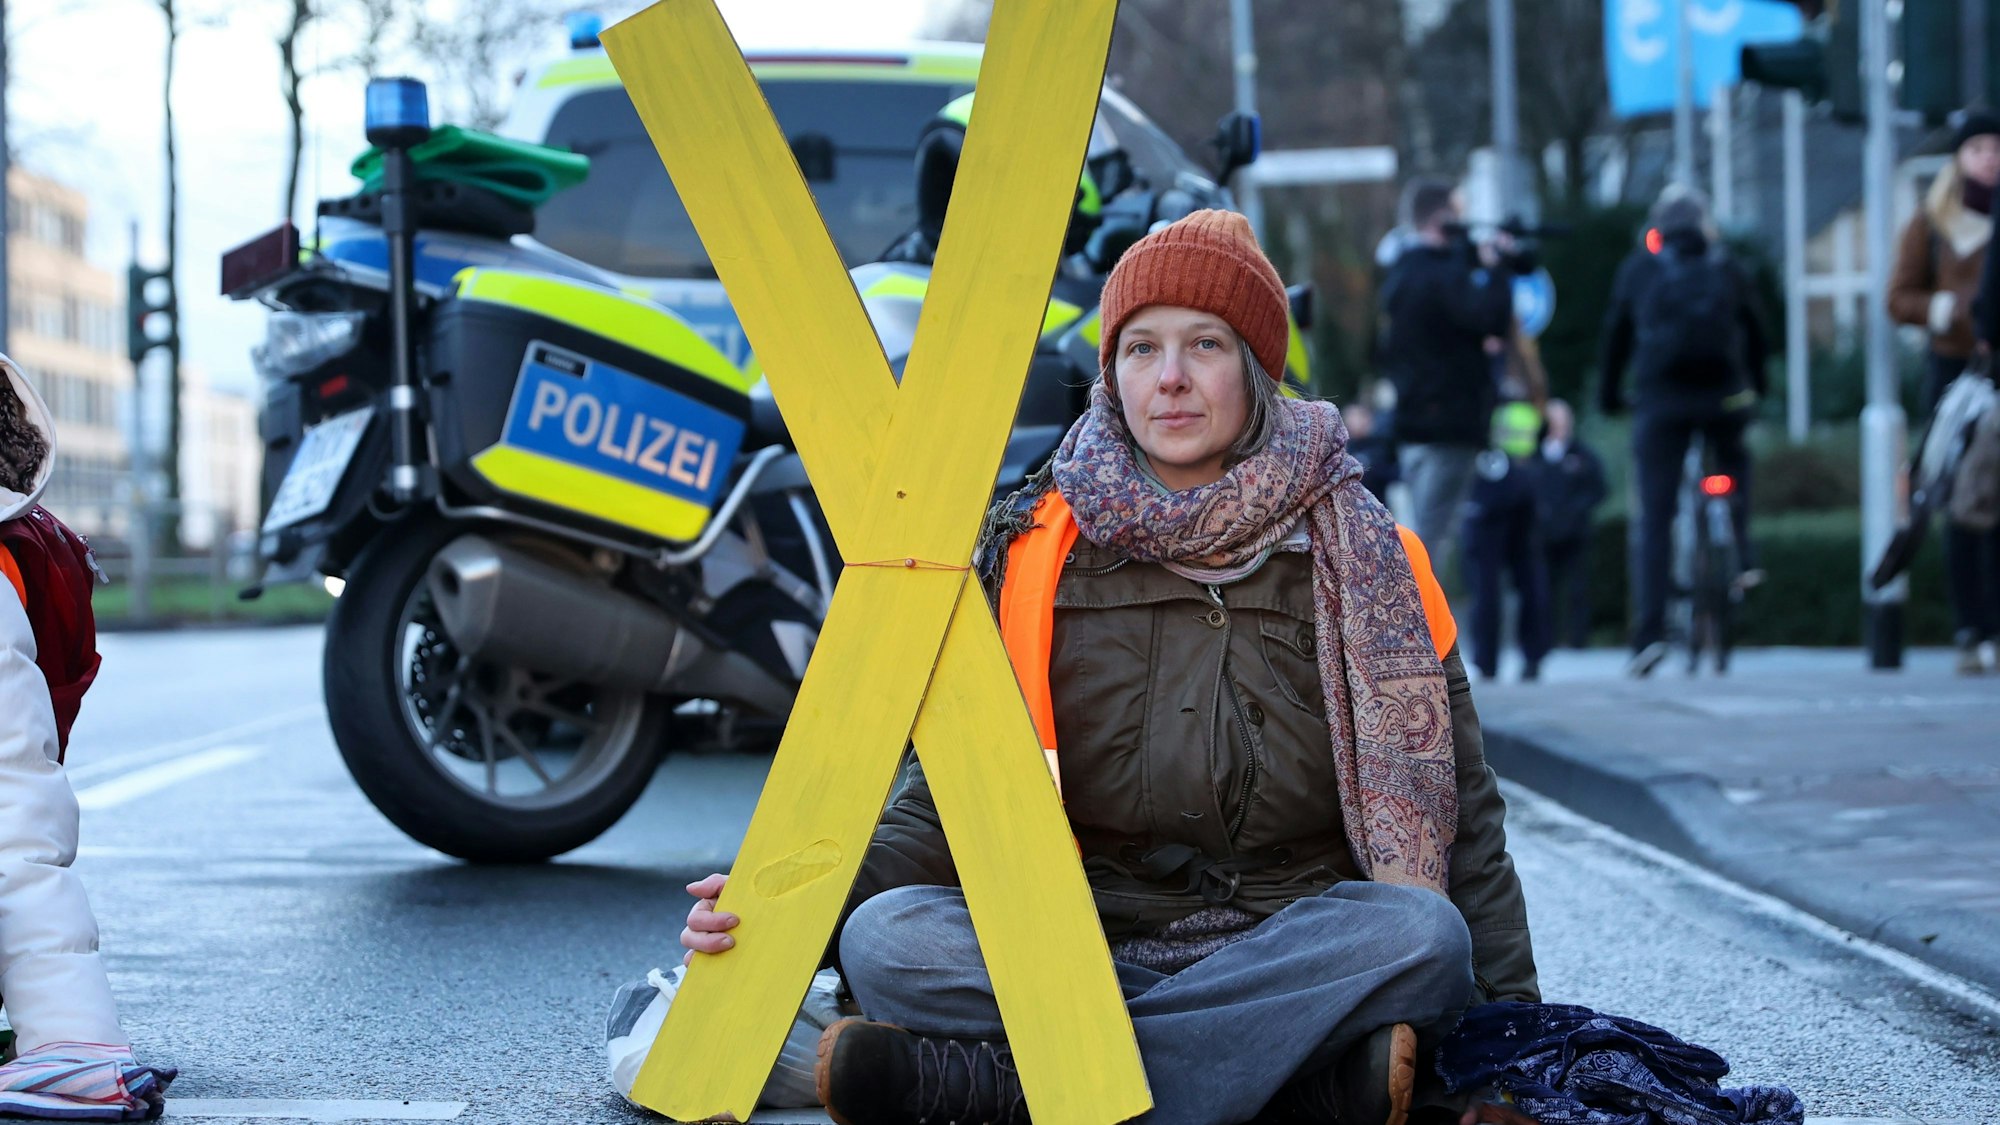 Caroline Schmidt von der Letzten Generation sitzt auf einer Straße im Schneidersitz. Eine Hand ist auf dem Boden angeklebt. In der anderen Hand trägt sie ein gelbes X.